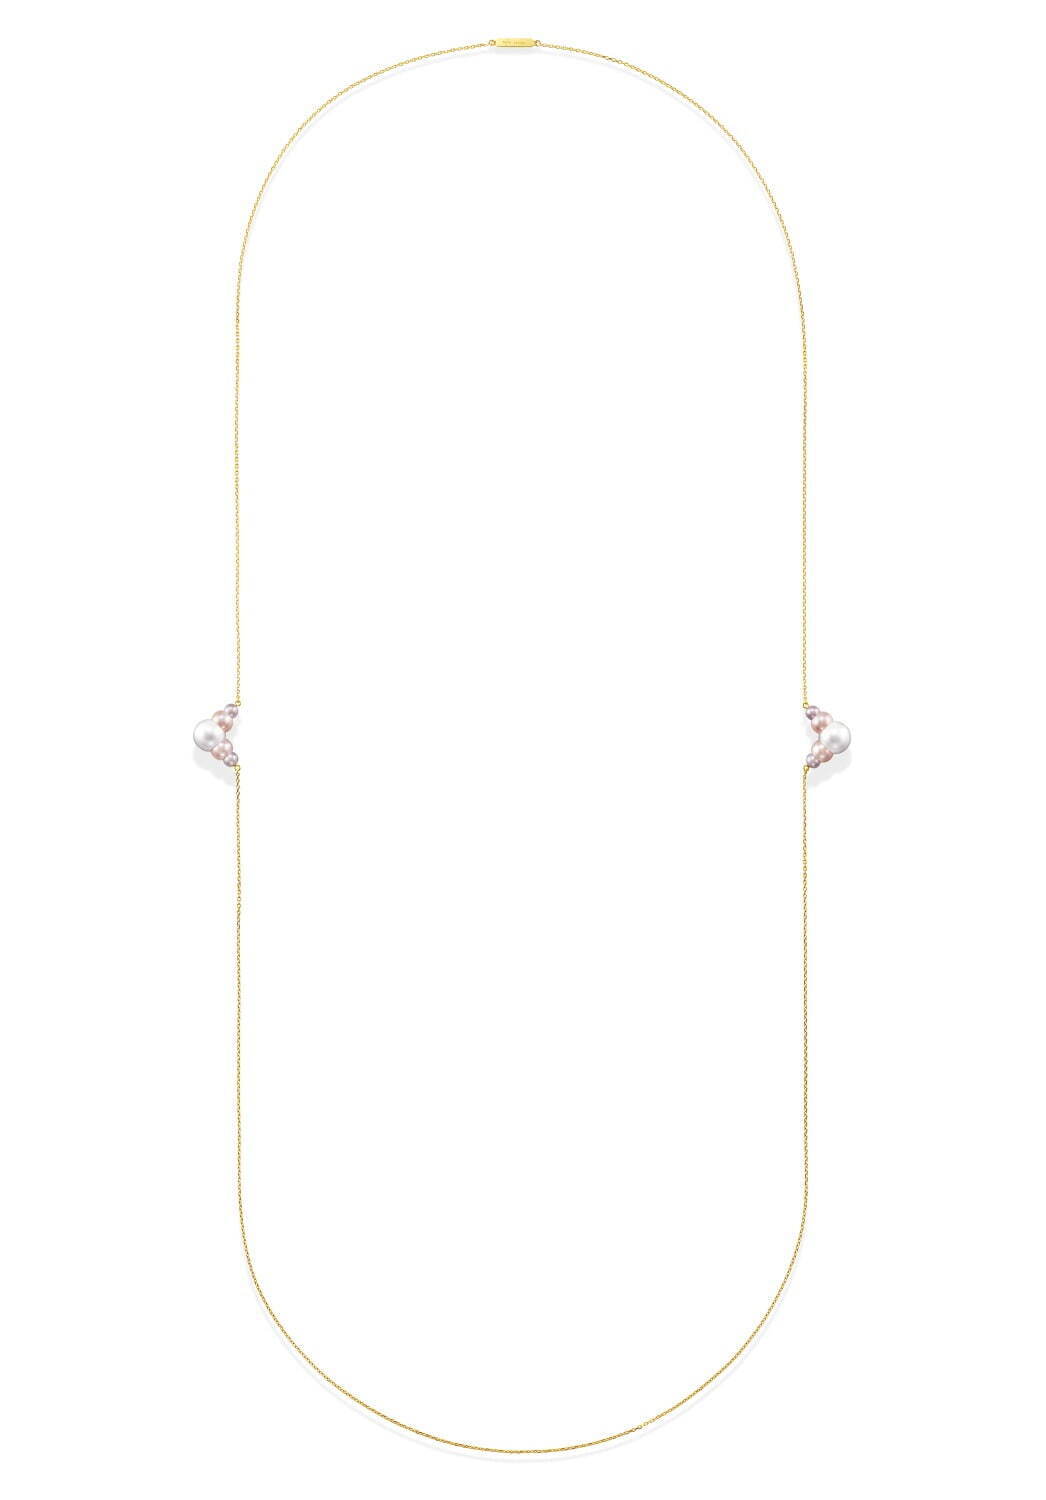 トリプルパール ネックレス(18K YG、淡水真珠) 583,000円